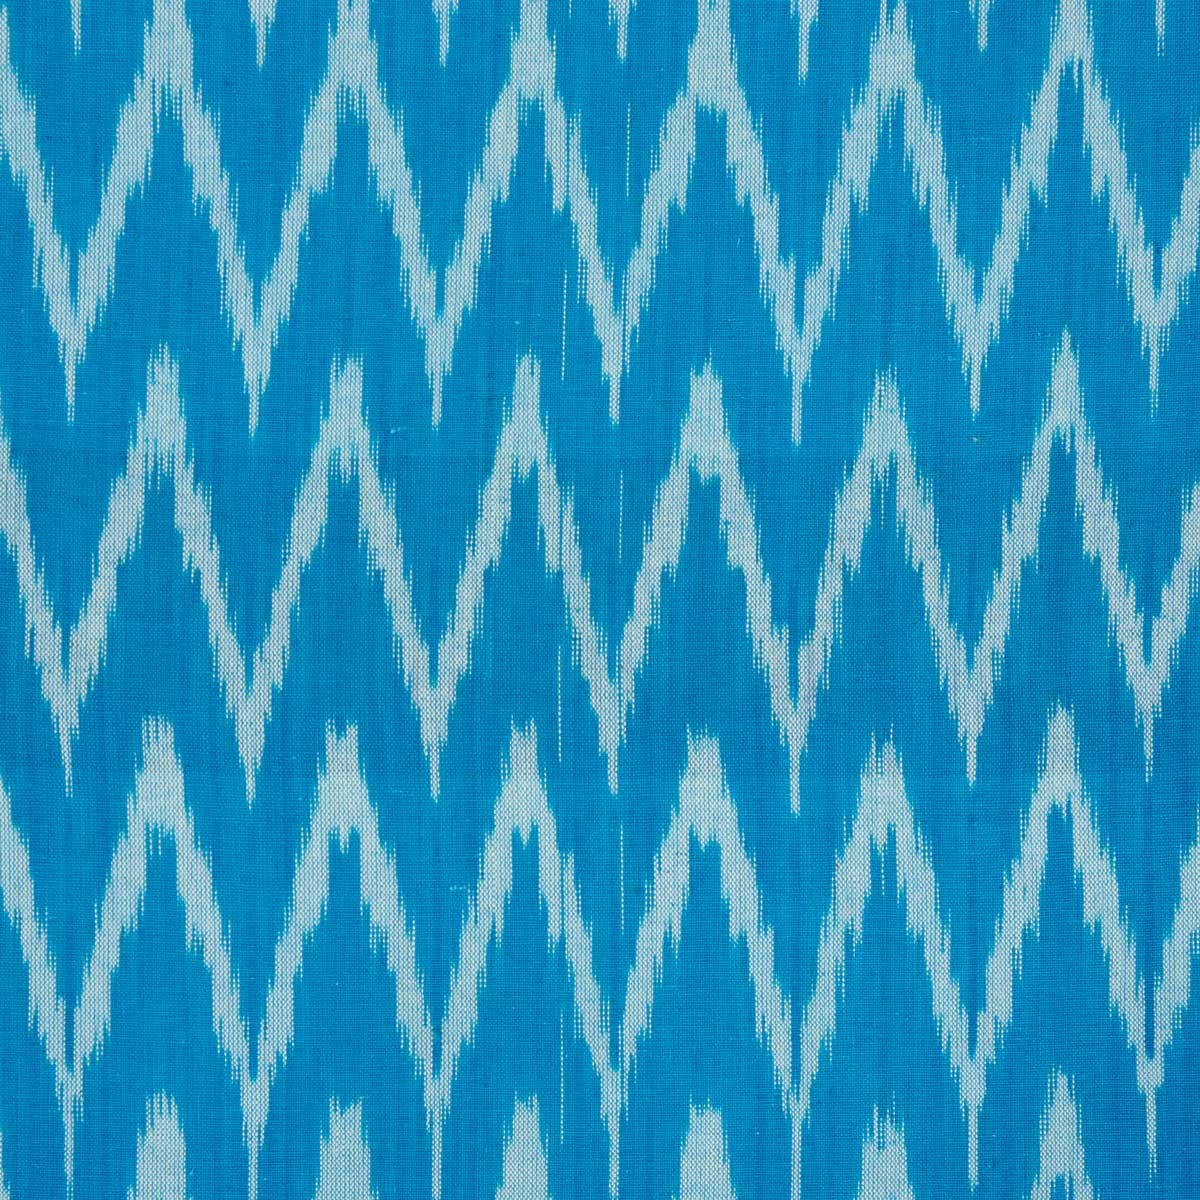 IKAT ZIGZAG Fabric, turquoise